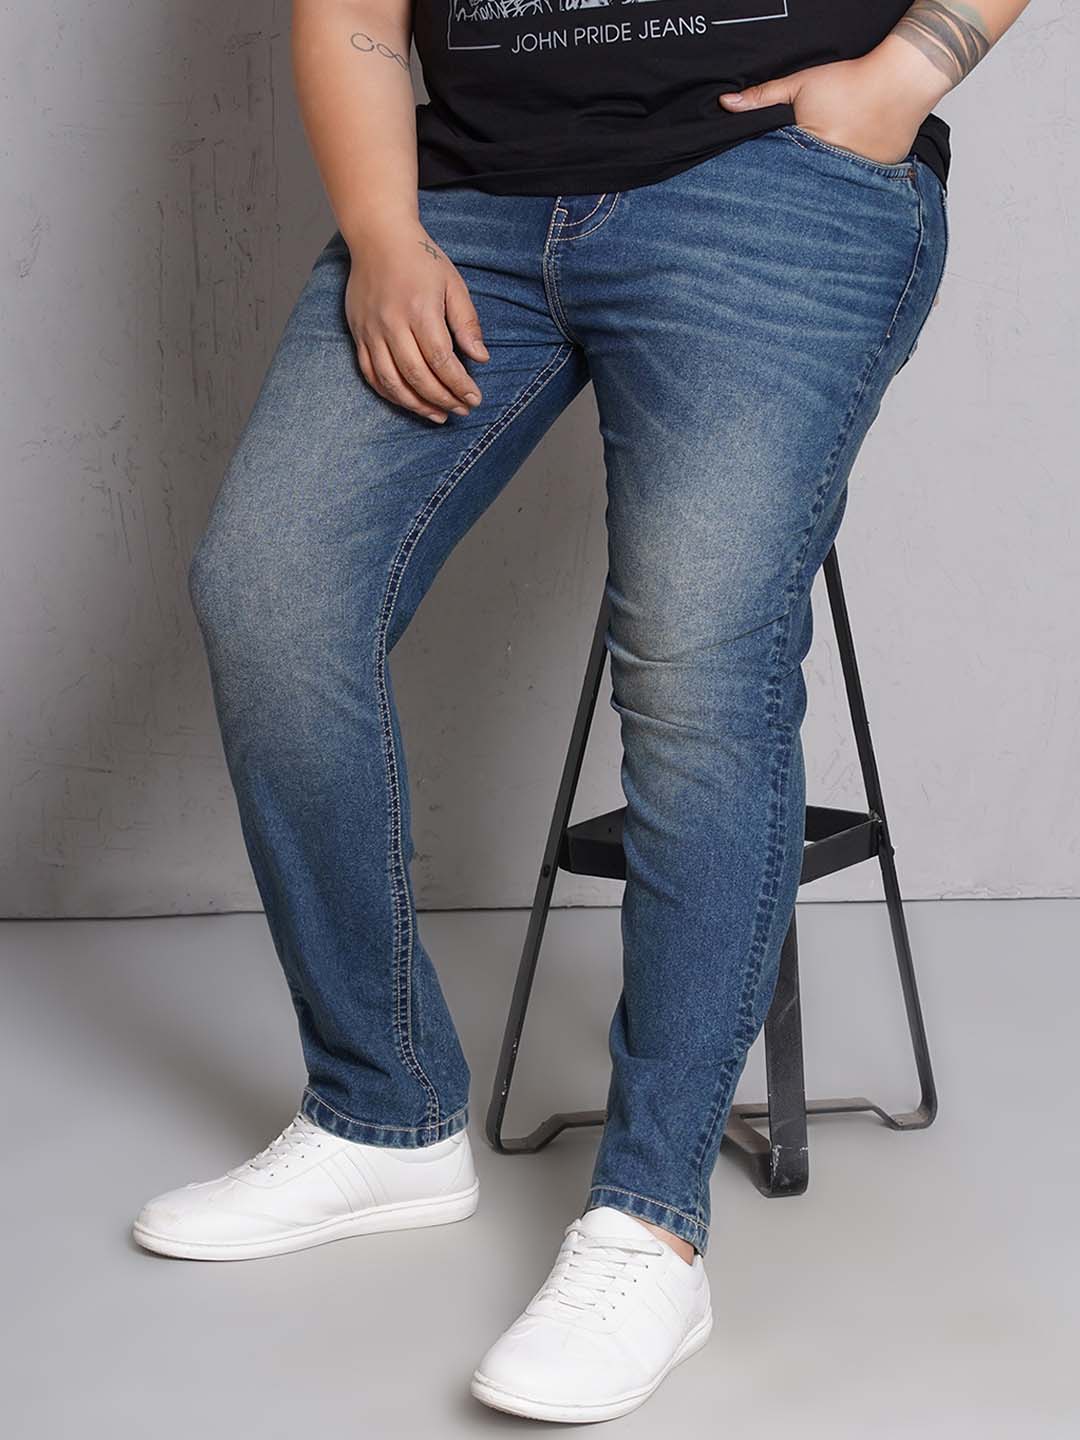 bottomwear/jeans/EJPJ25147/ejpj25147-1.jpg